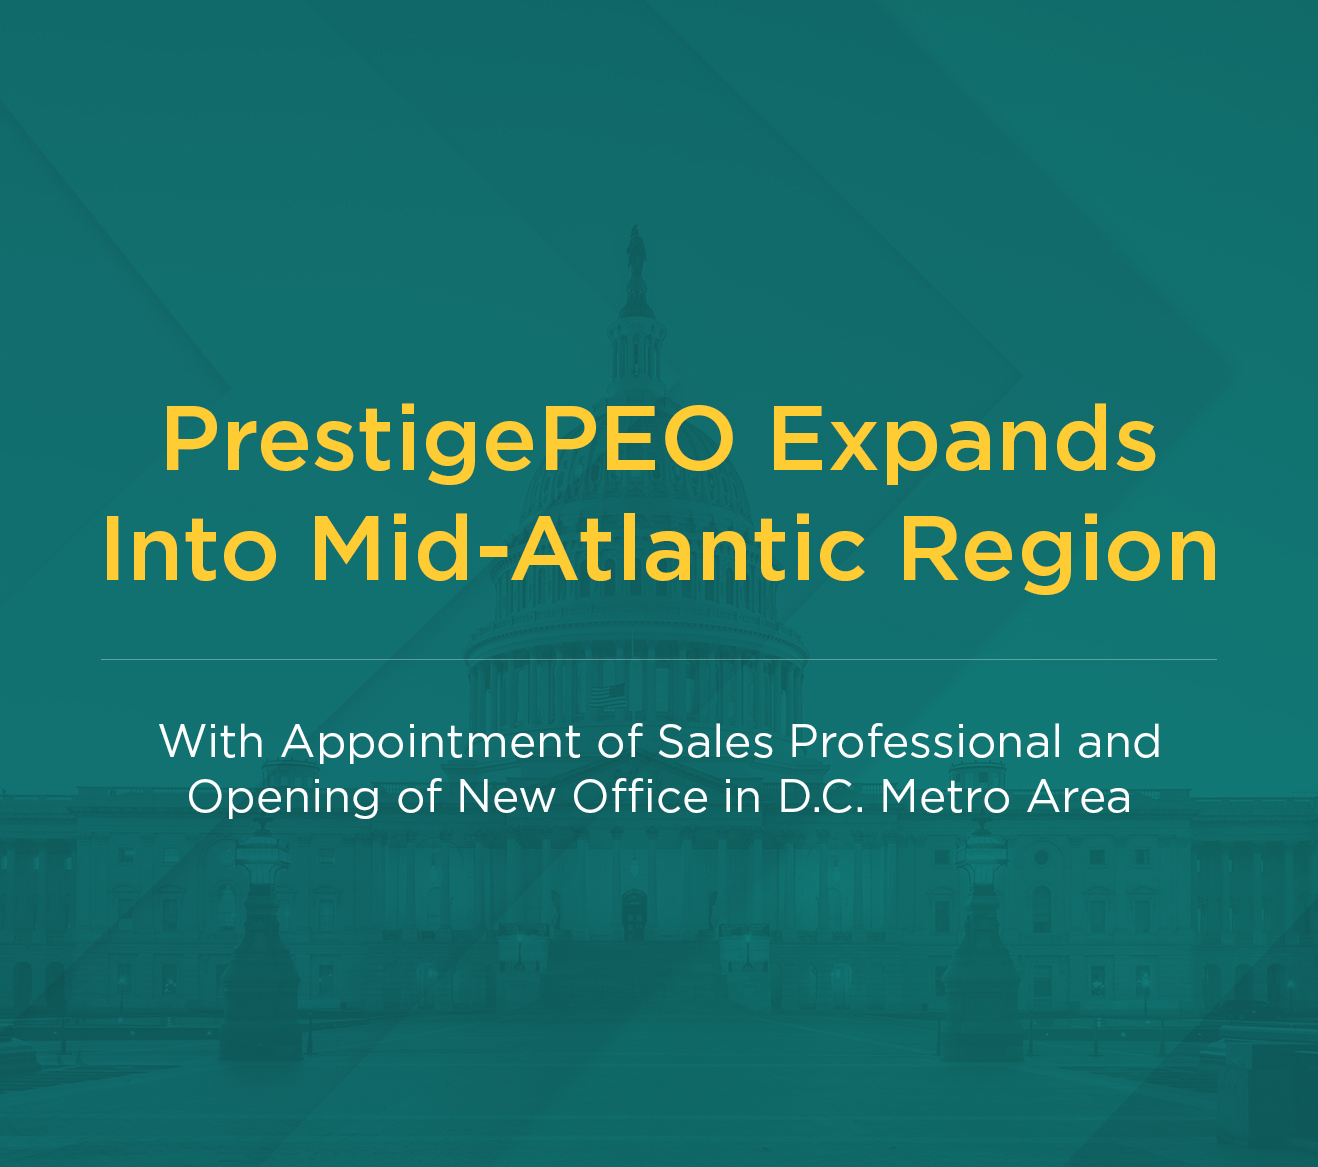 PrestigePEO Expands Into Mid-Atlantic Region